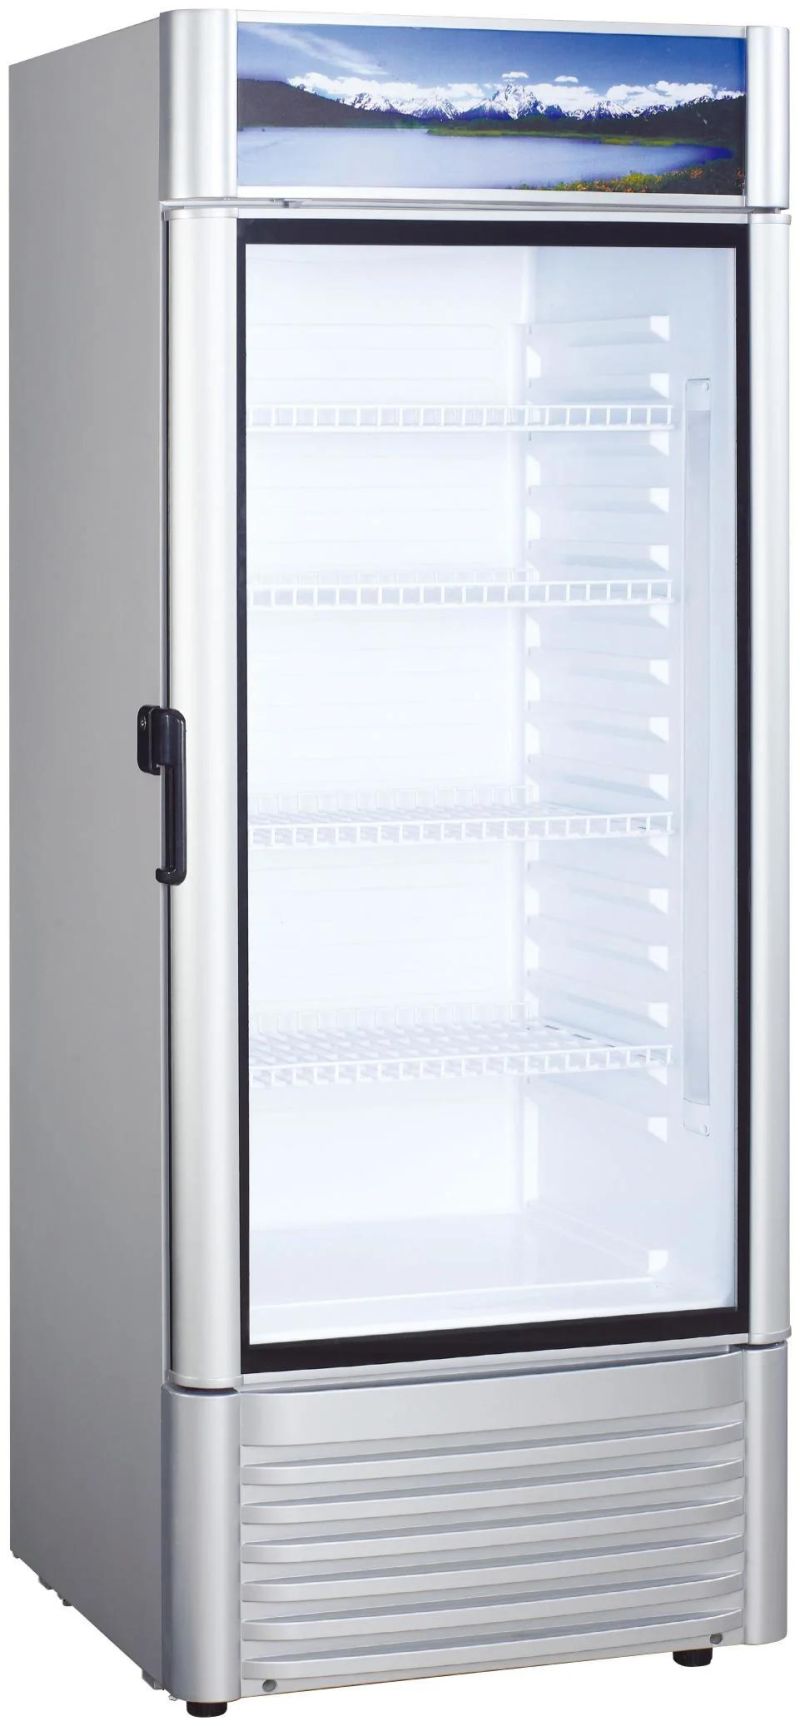 Supermarket Upright Glass Display Cold Beverage Refrigerator Showcase Cooler